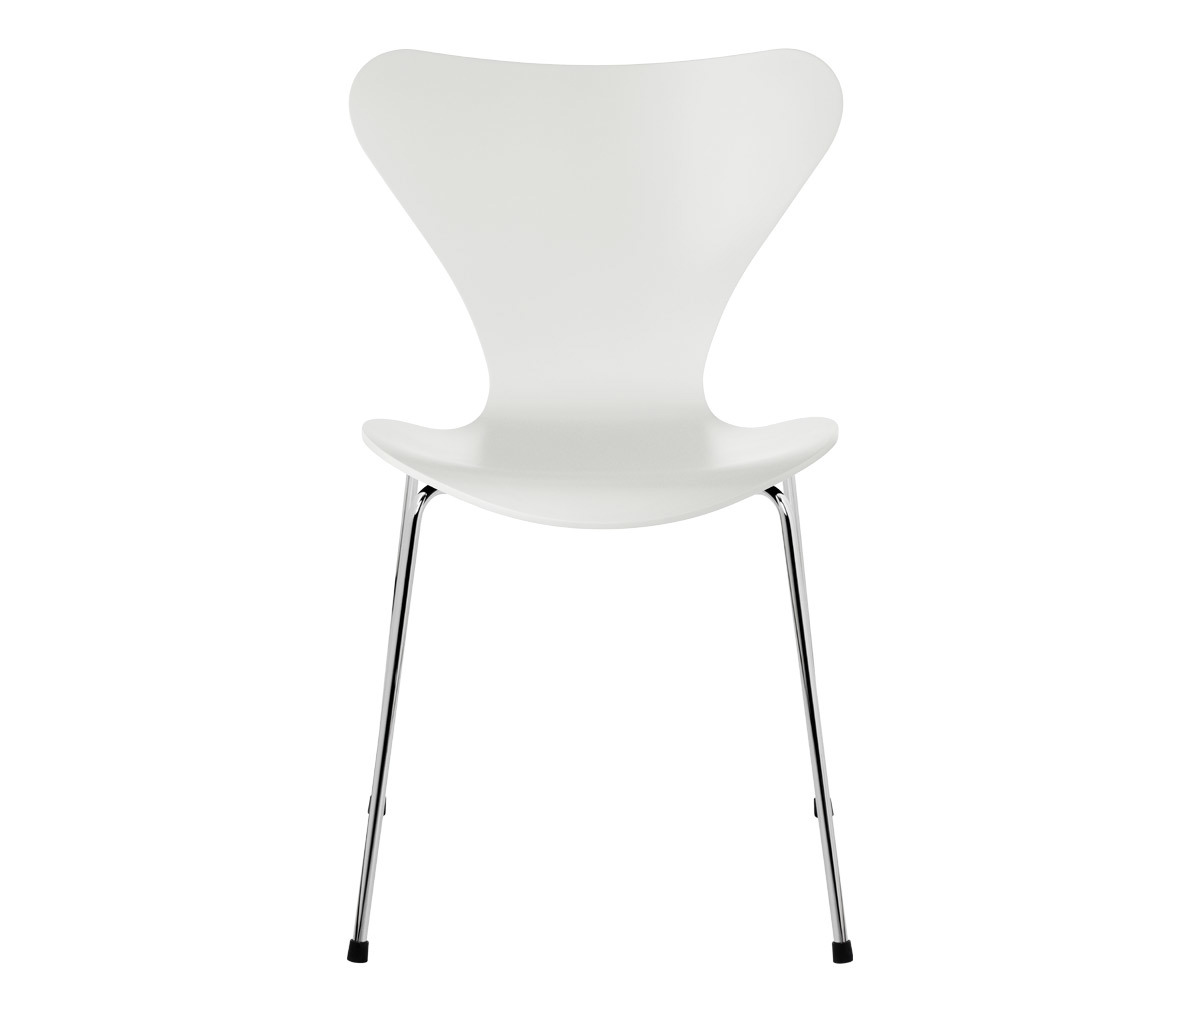 Chair 3107, “Series 7”